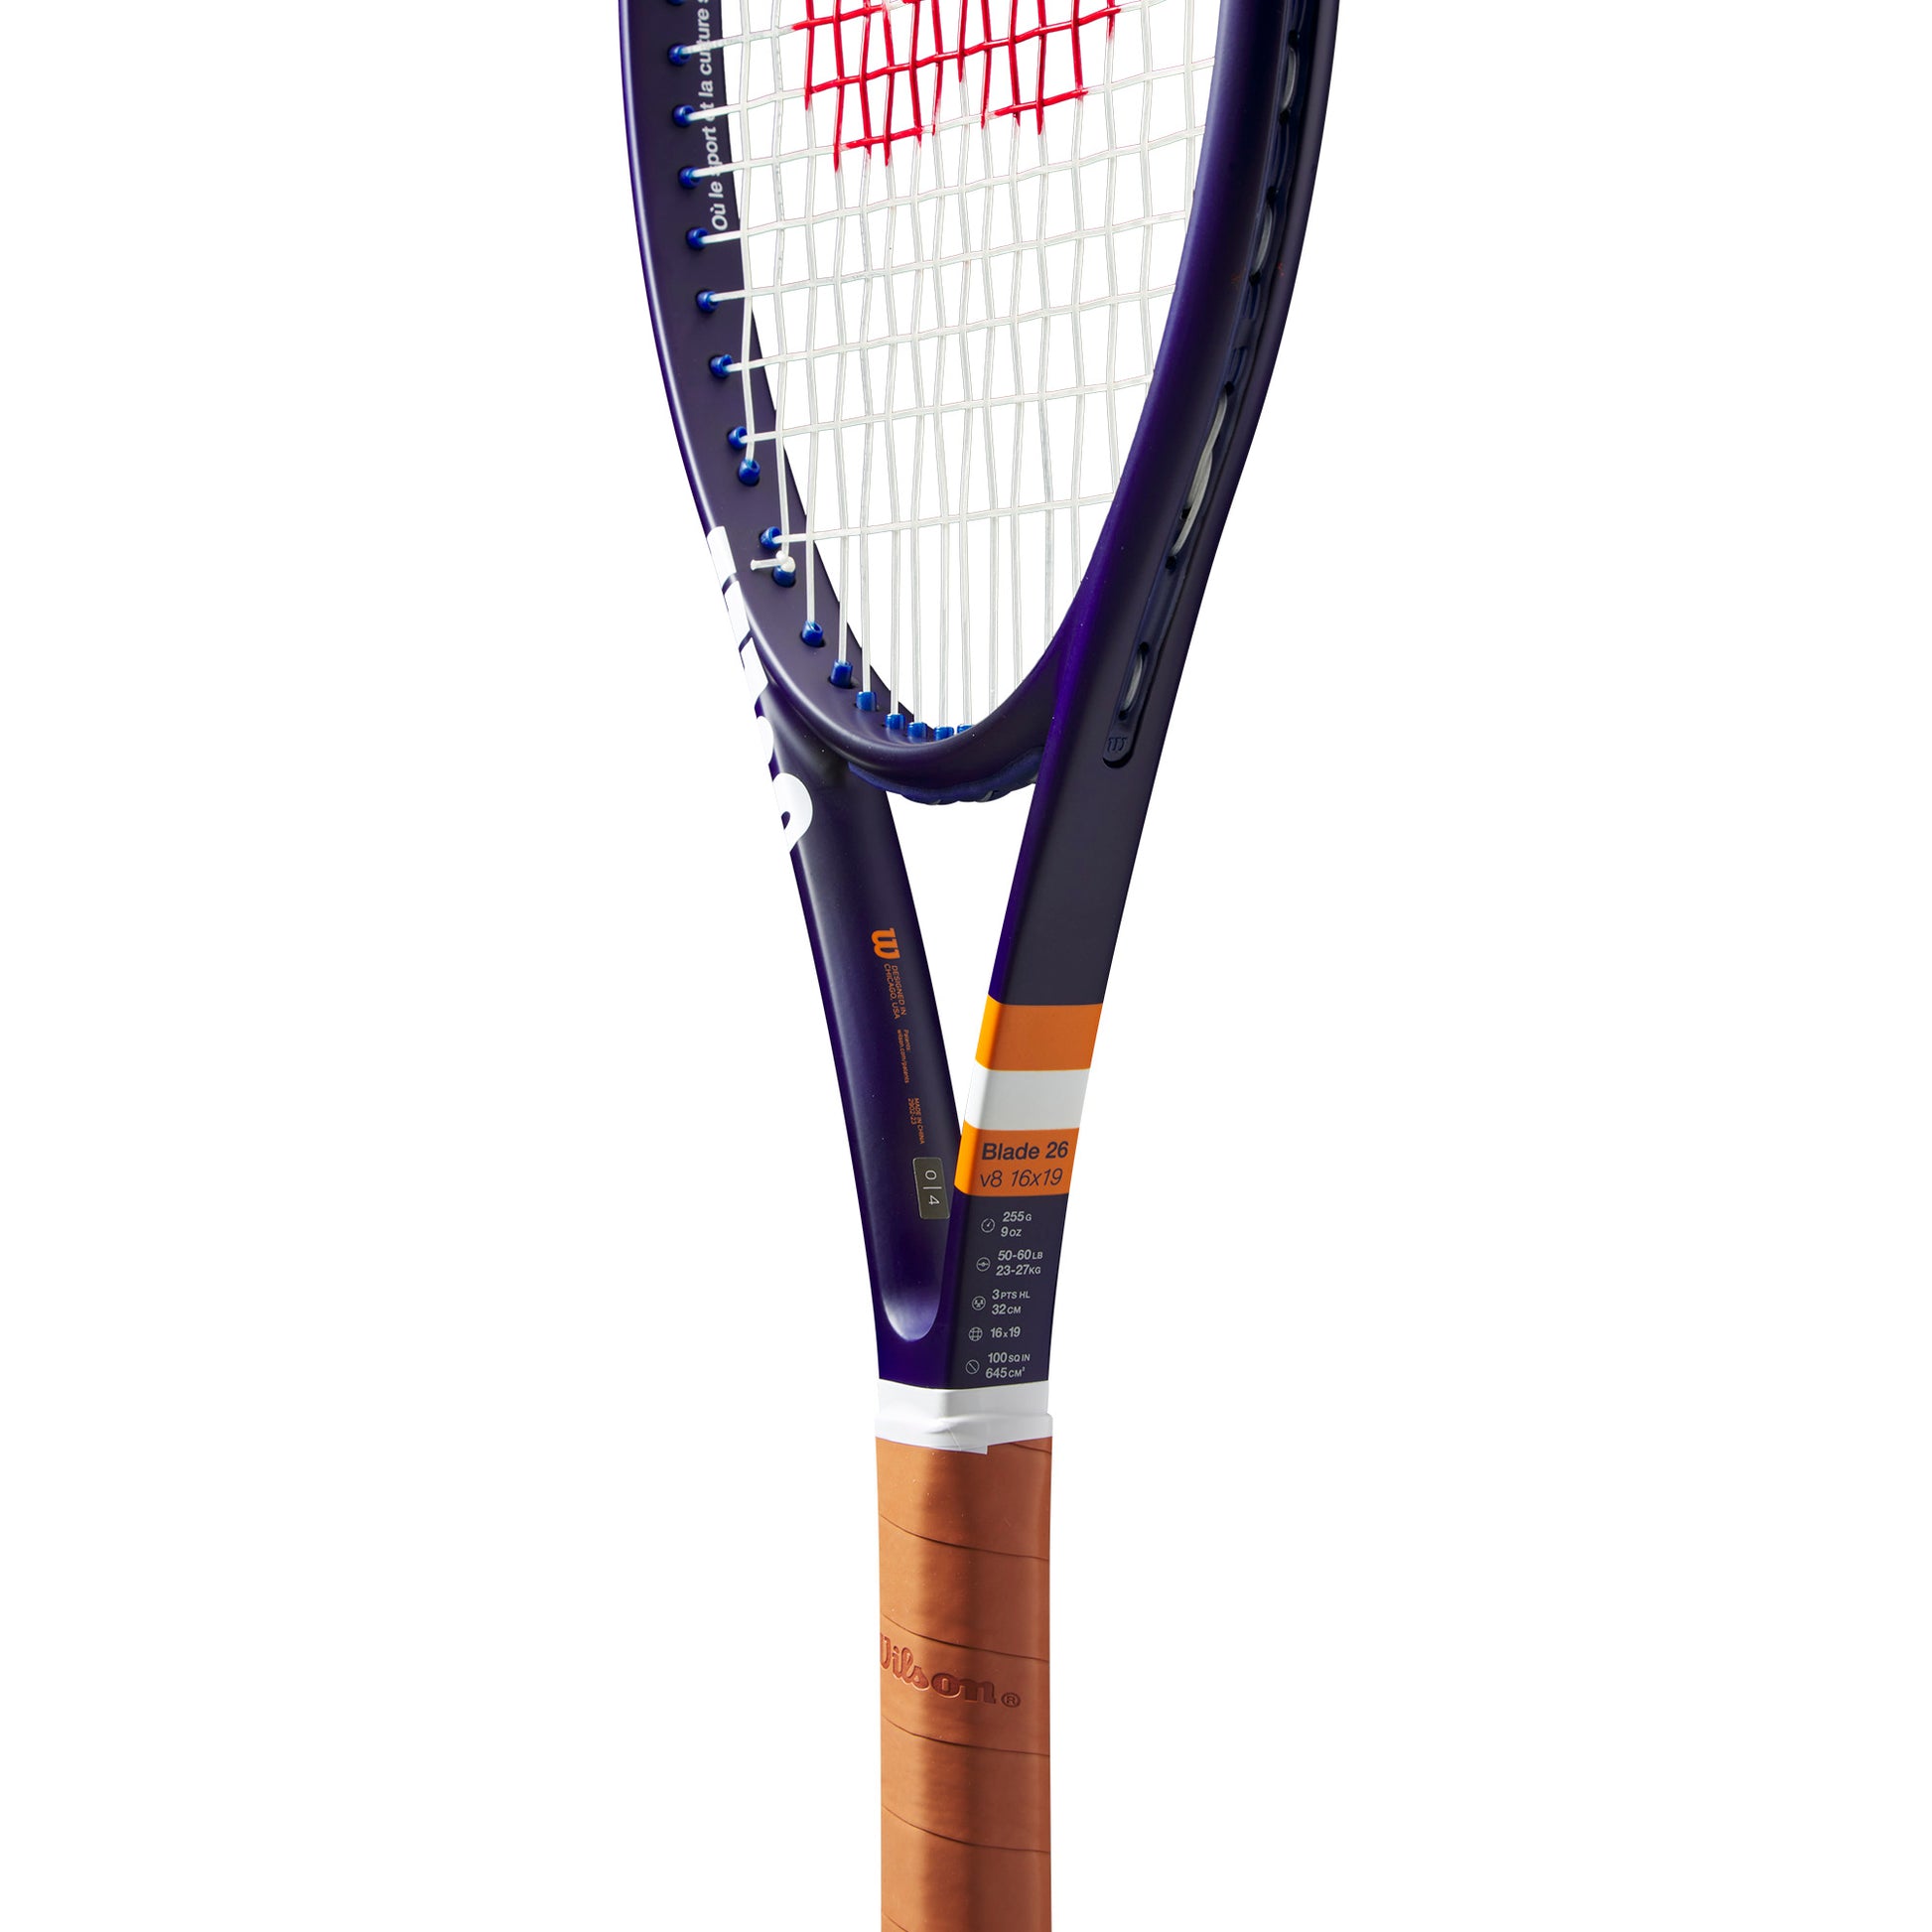 Wilson Blade 26 Roland Garros 2023 Tennis Racket